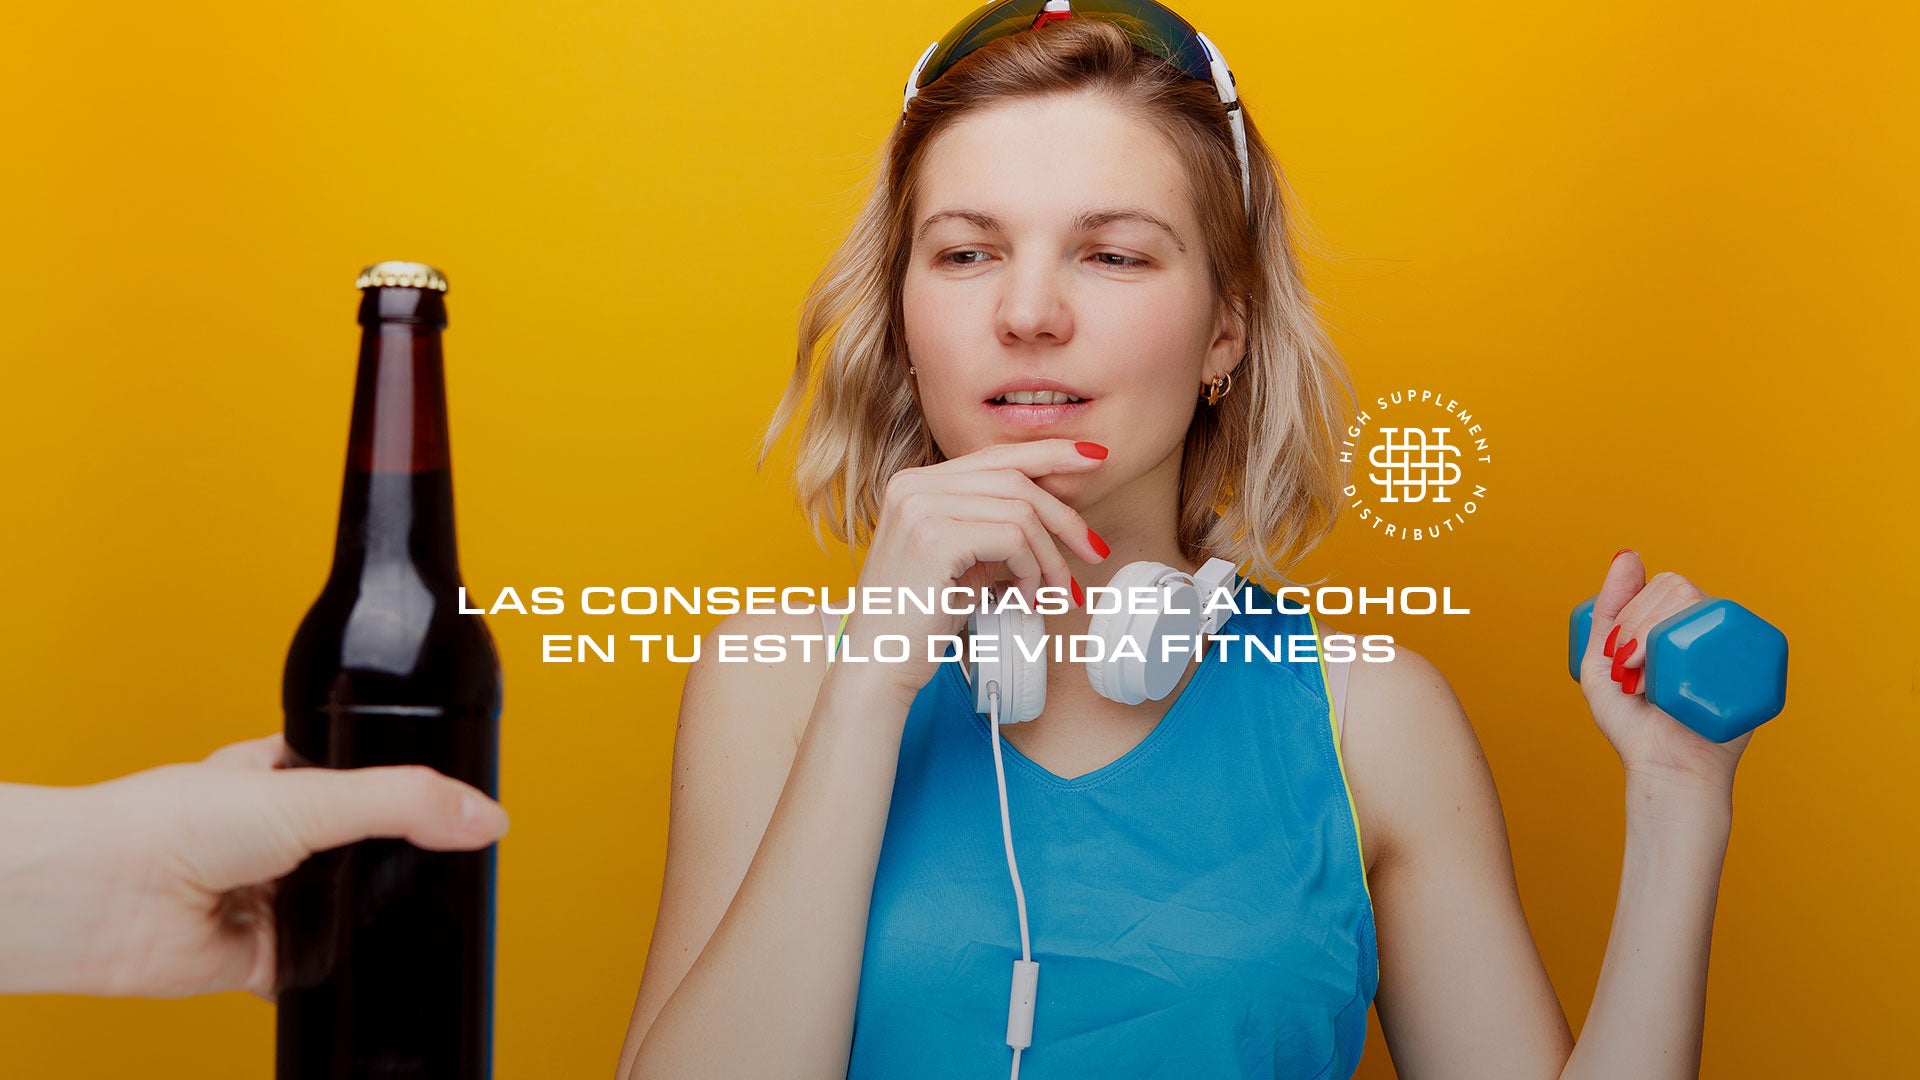 Las consecuencias del alcohol en tu estilo de vida fitness